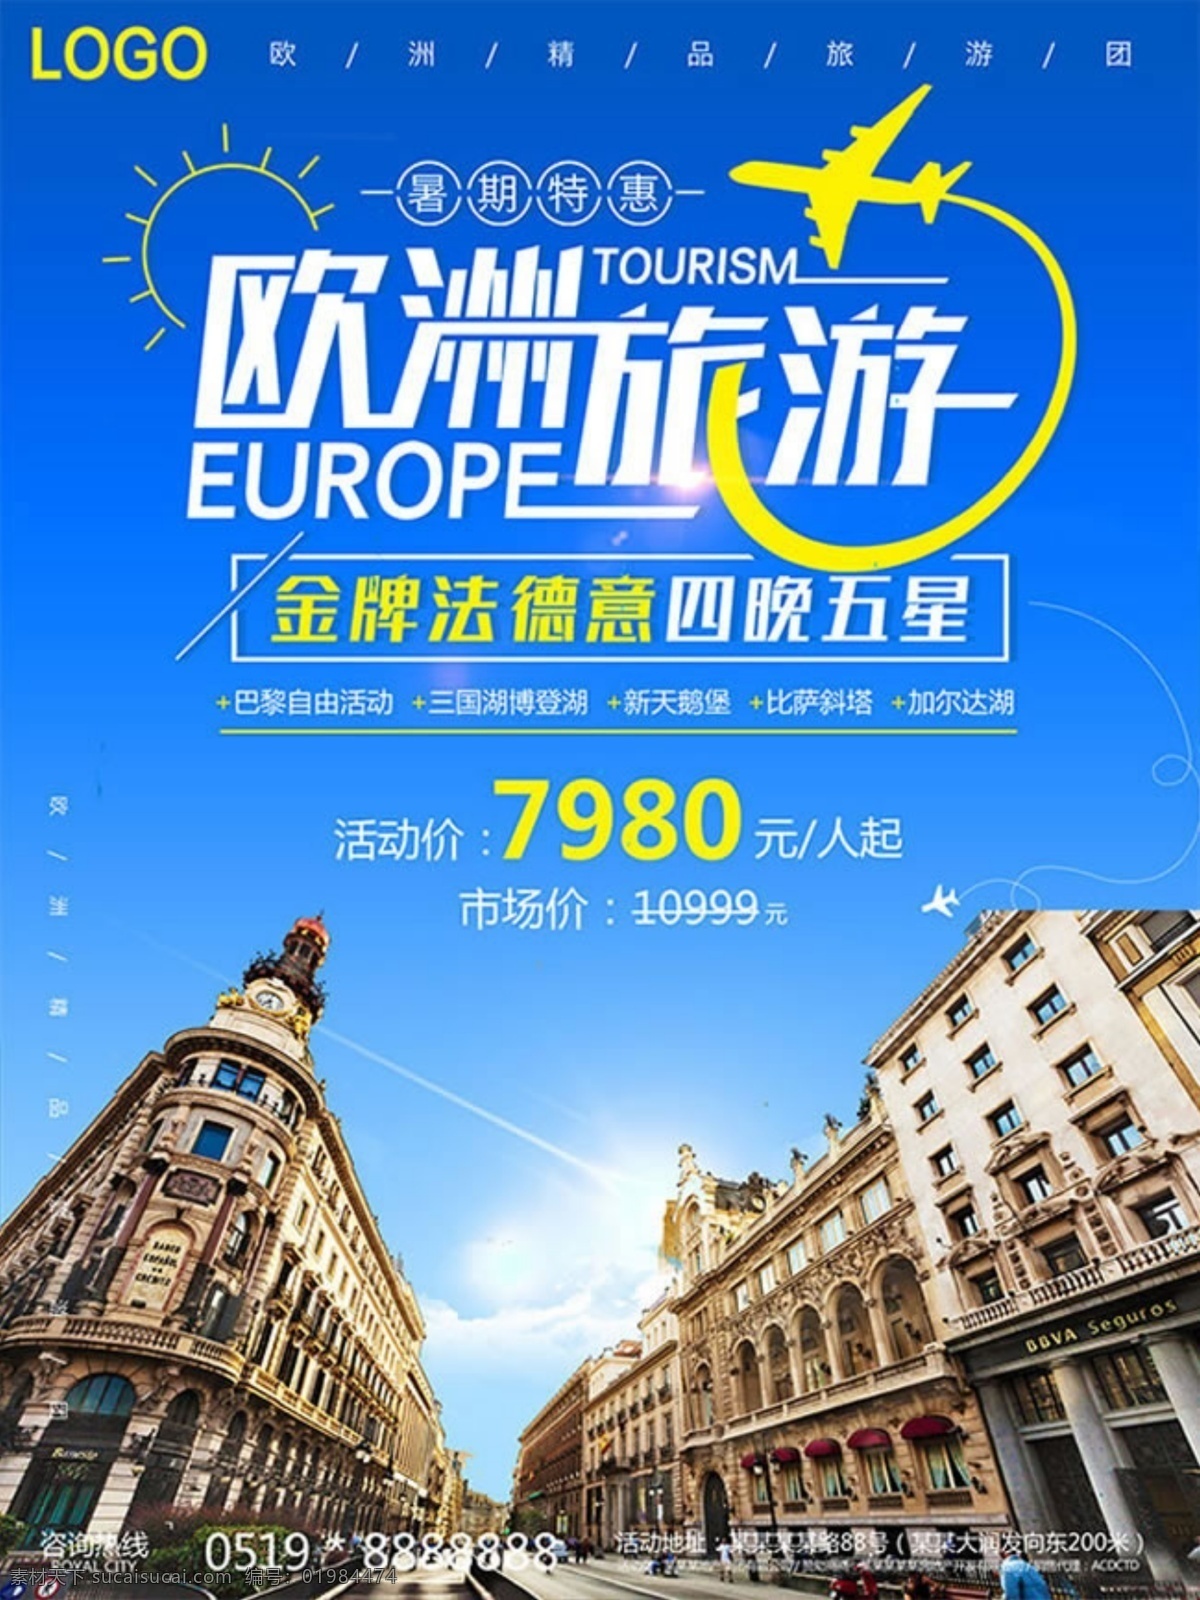 欧洲旅游海报 欧洲旅游 欧洲三国国 暑期特惠 金牌法德意 新天鹅堡